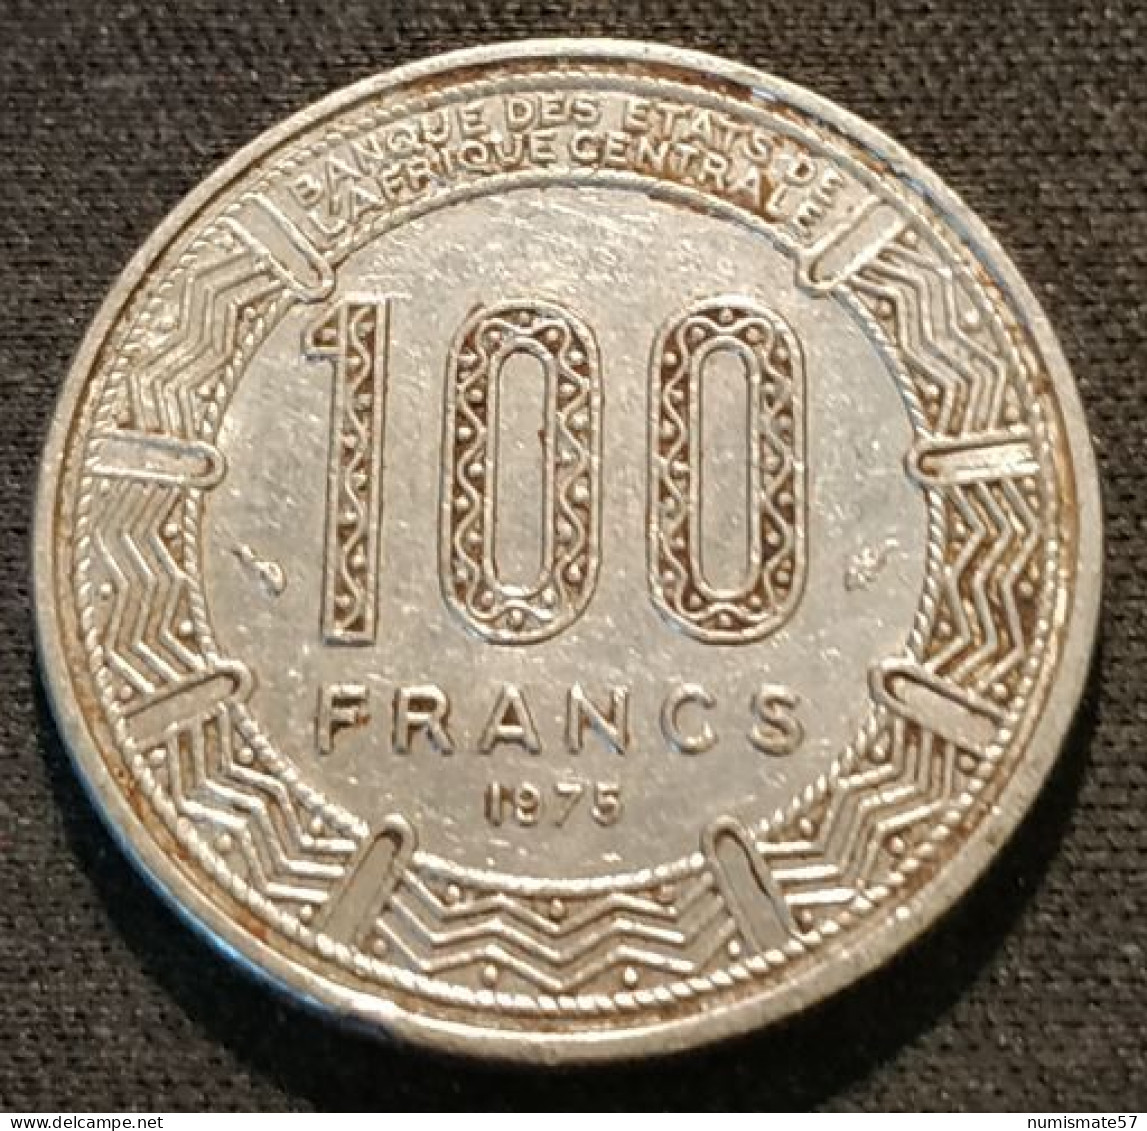 CAMEROUN - 100 FRANCS 1975 - KM 17 - Camerun